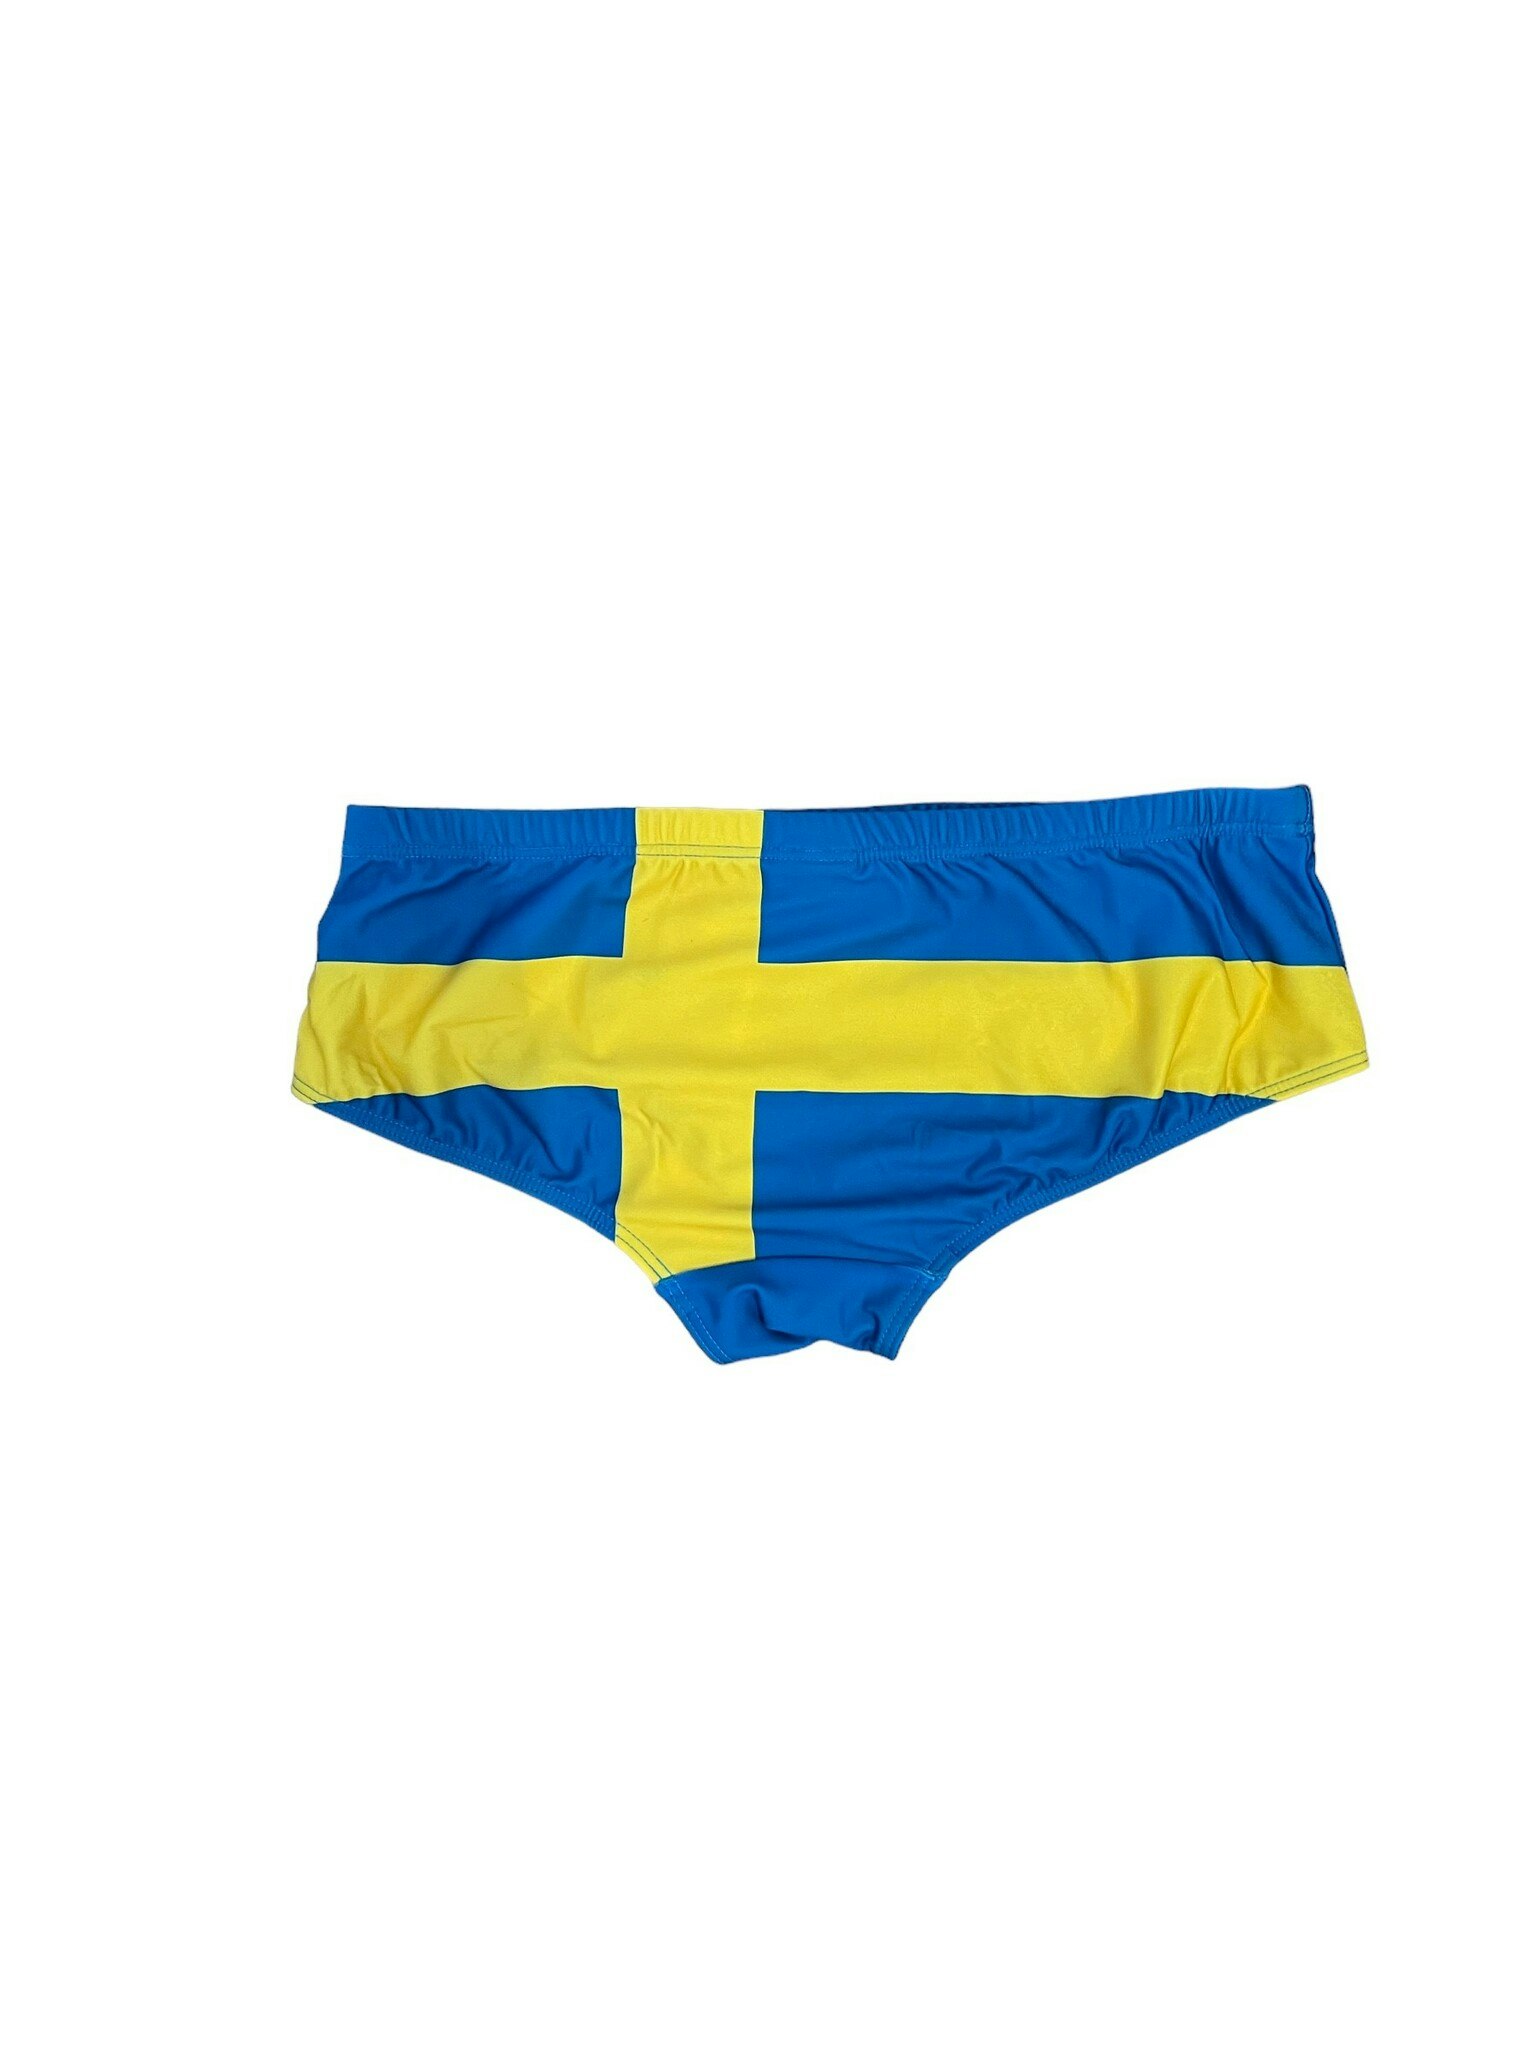 Sverige Trunks - Badbyxor med Svenska Flaggan | Swimshop - SWIMSHOP.se -  Köp din simutrustning här!